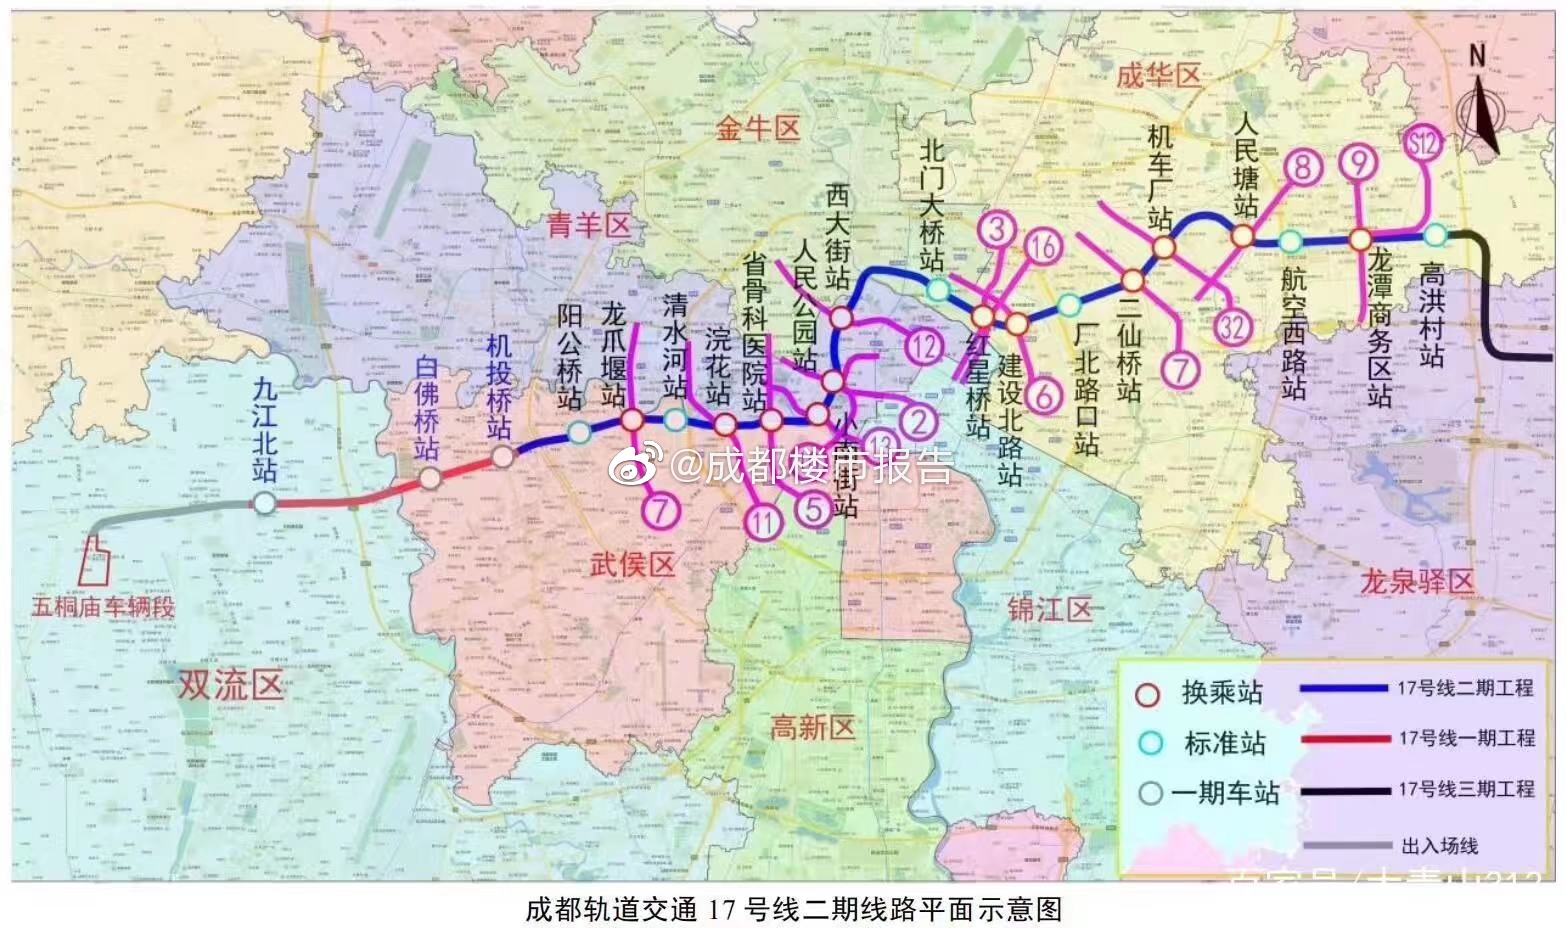 郑州地铁13号线线路图图片